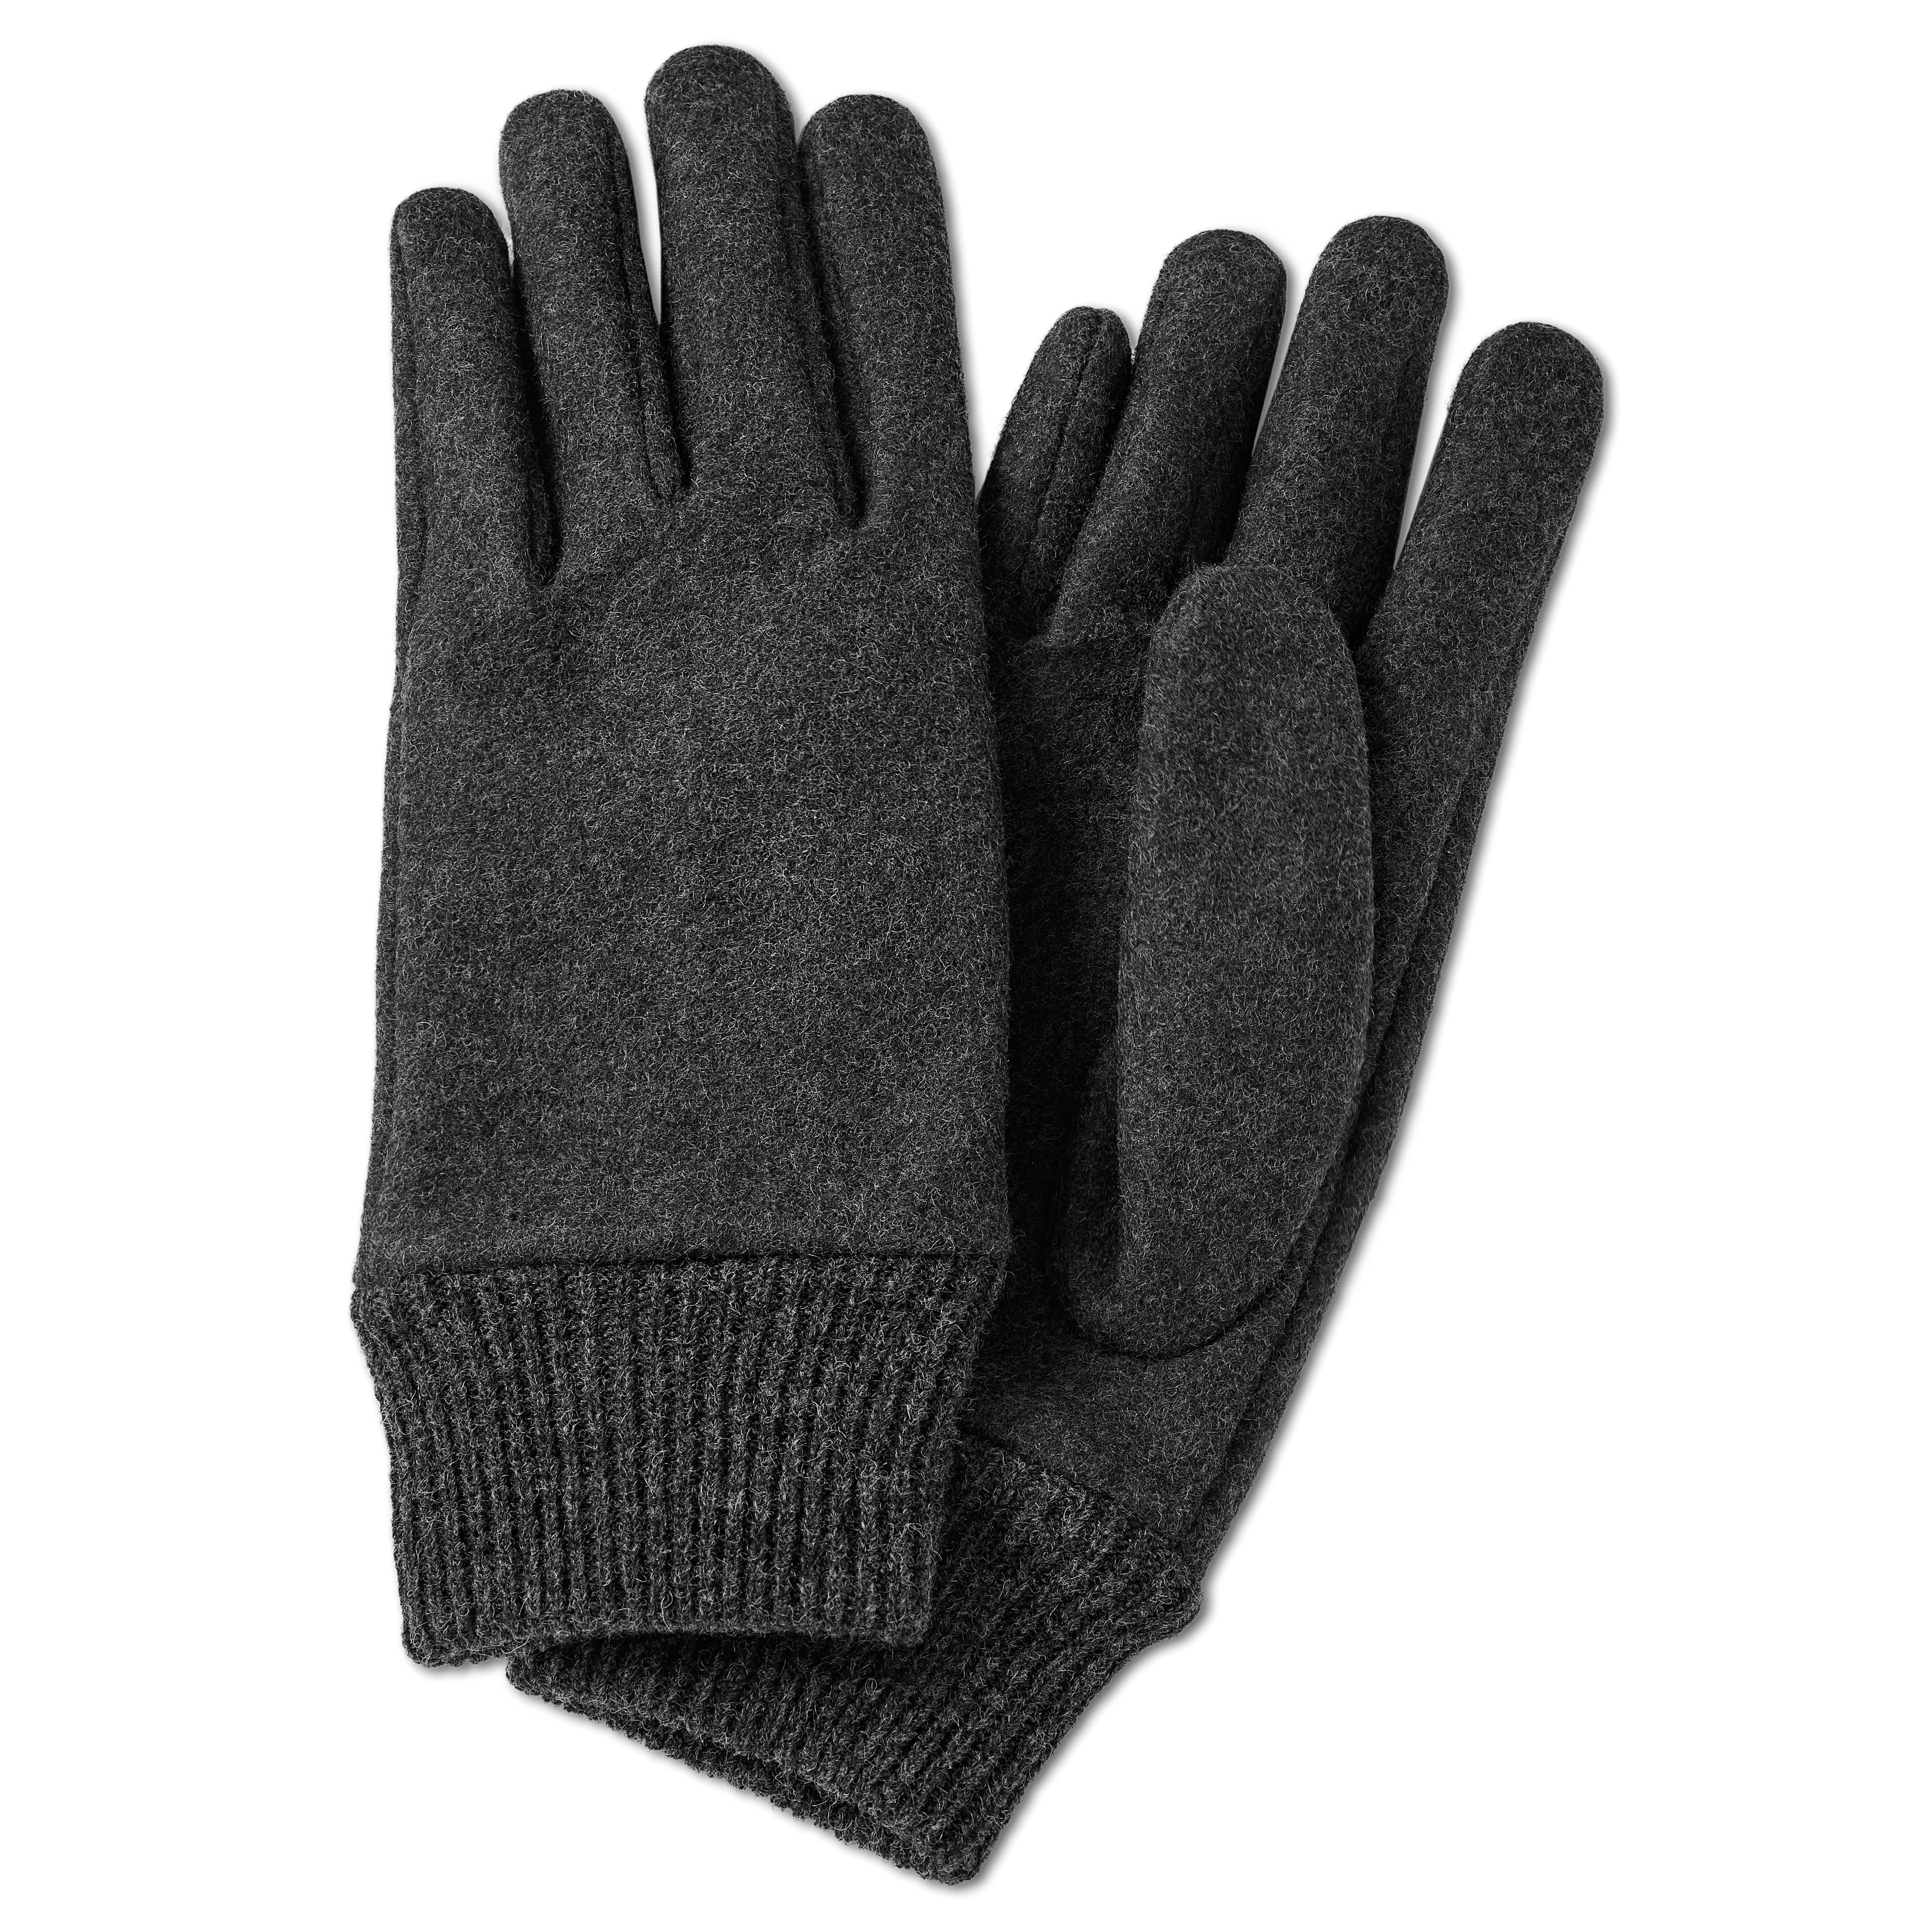 | In | Sidegren Hiems Gloves | stock! Gray Wool